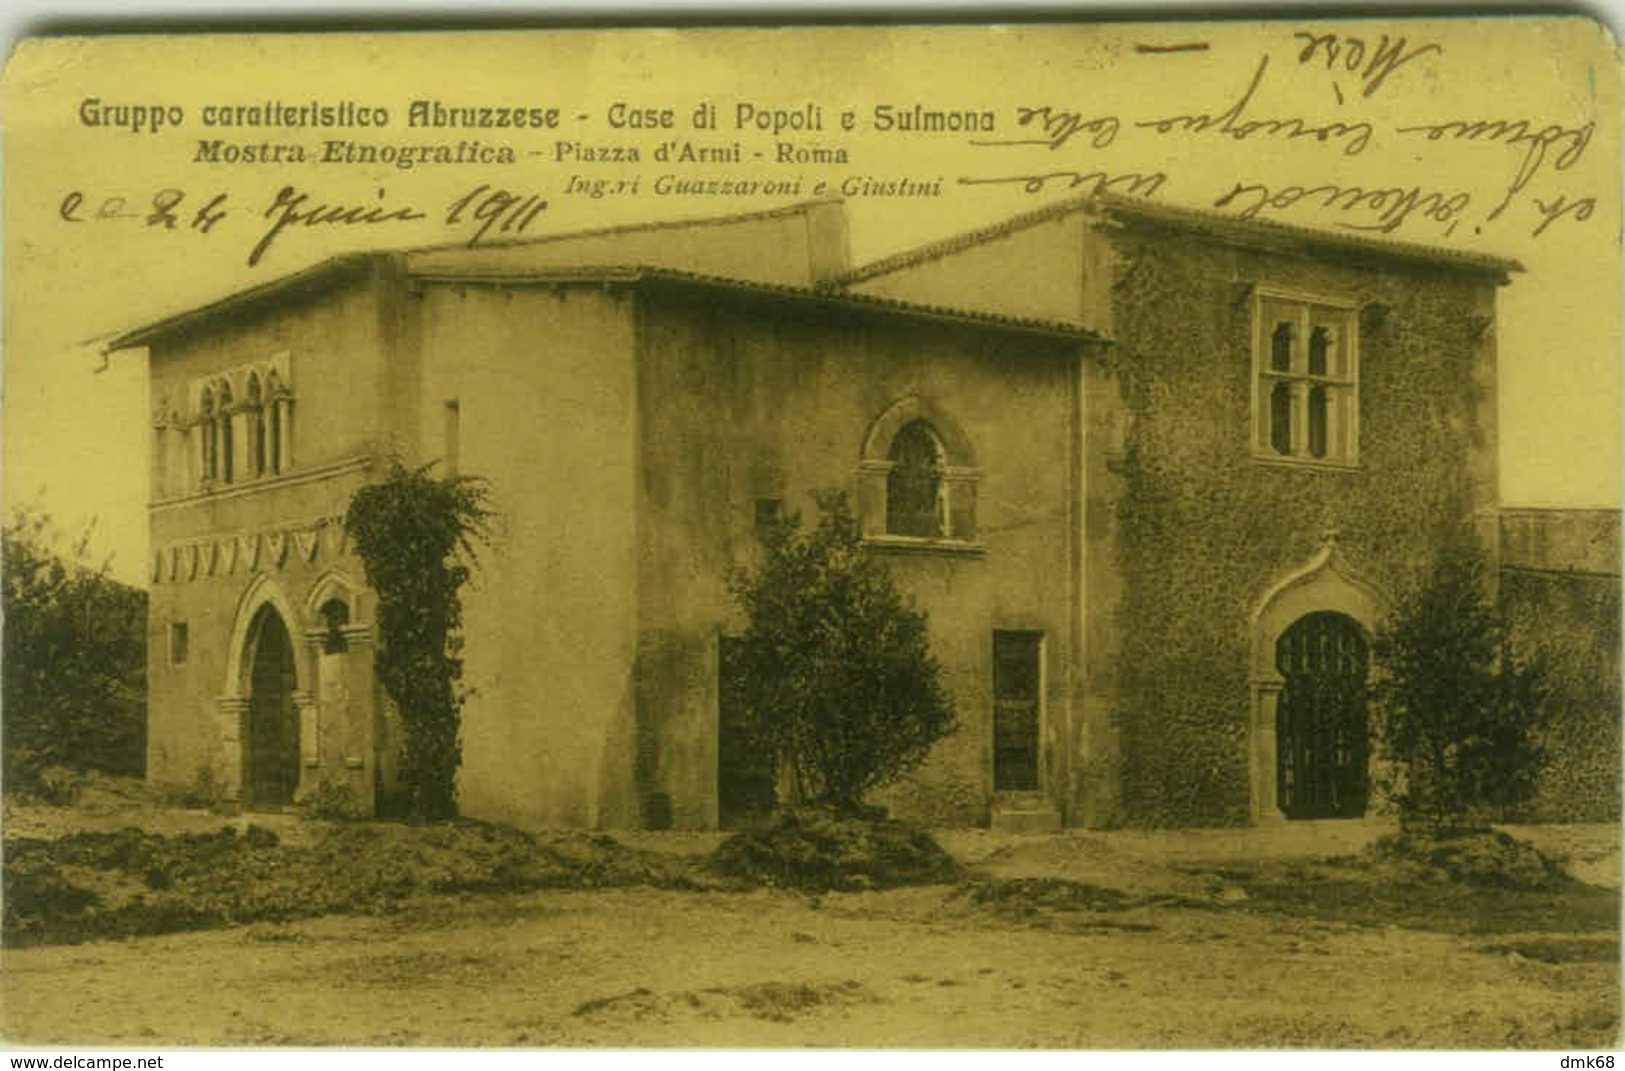 ROMA - GRUPPO CARATTERISTICO ABRUZZESE - CASE DI POPOLI E SULMONA - MOSTRA ETNOGRAFICA 1911 (5086) - Mostre, Esposizioni